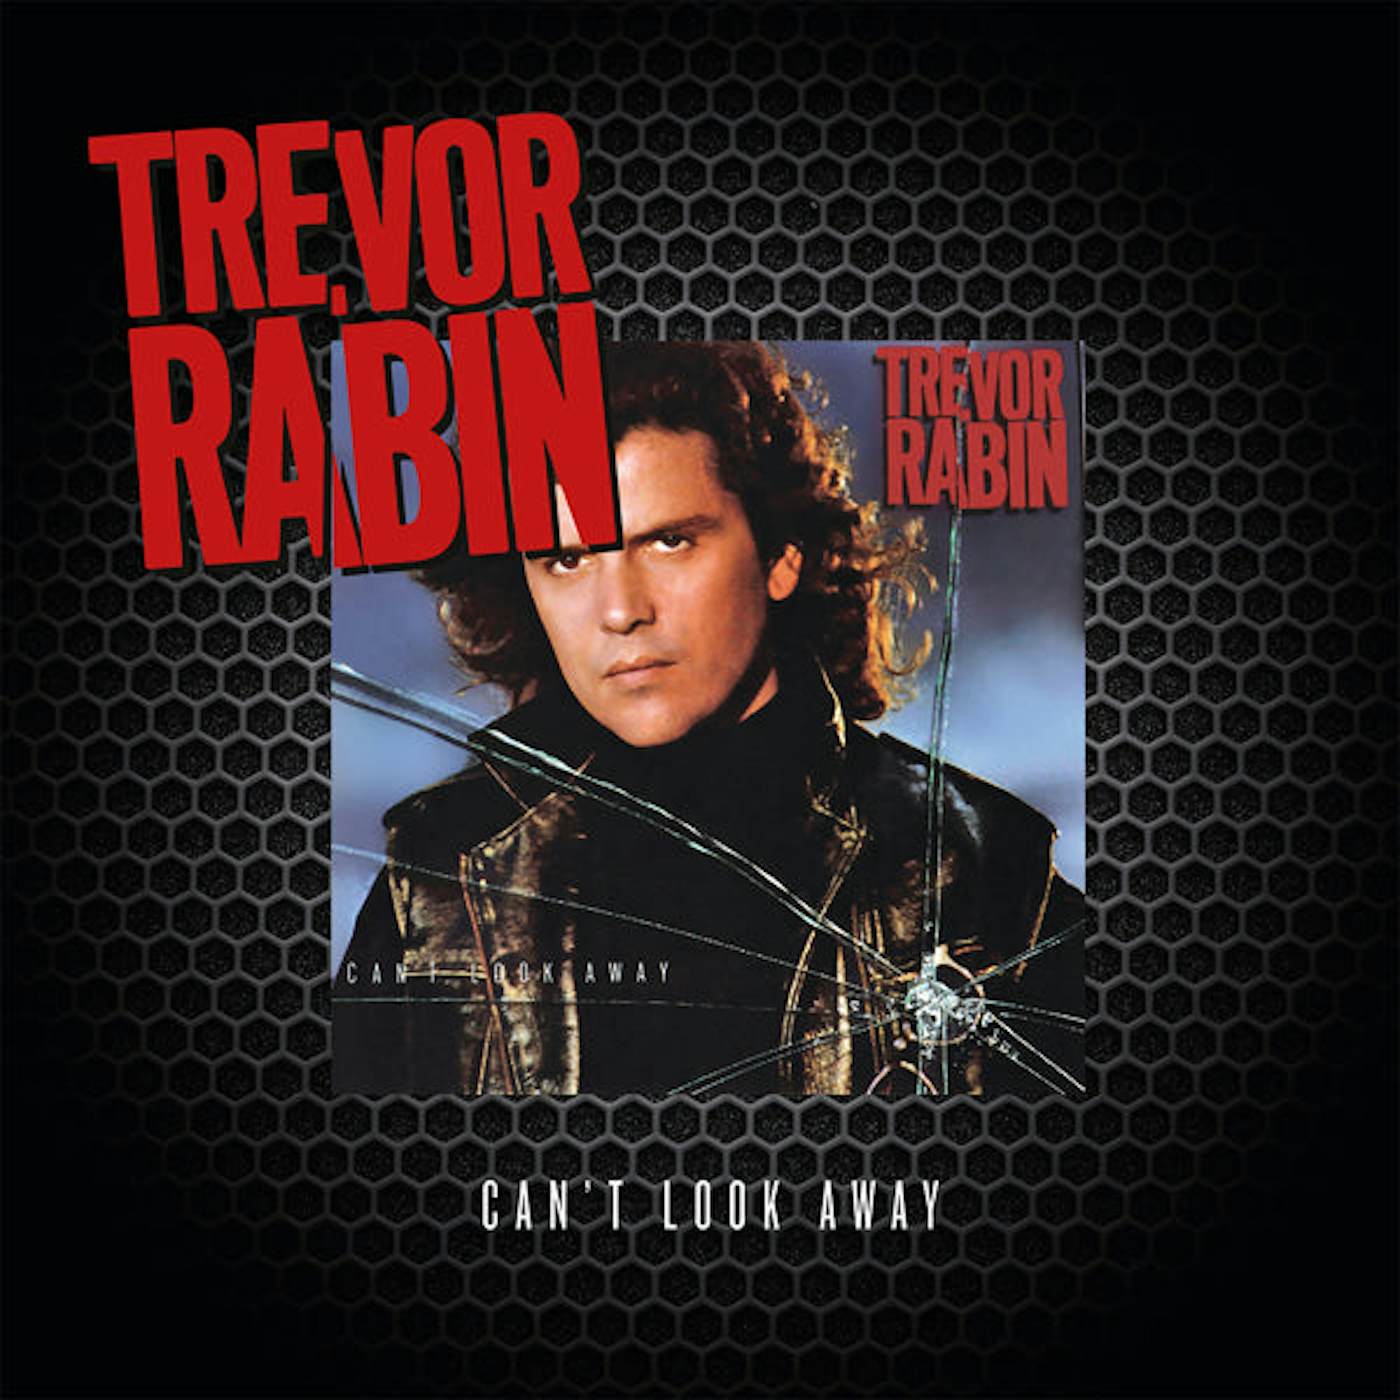 Trevor Rabin LP - Can't Look Away (Vinyl)